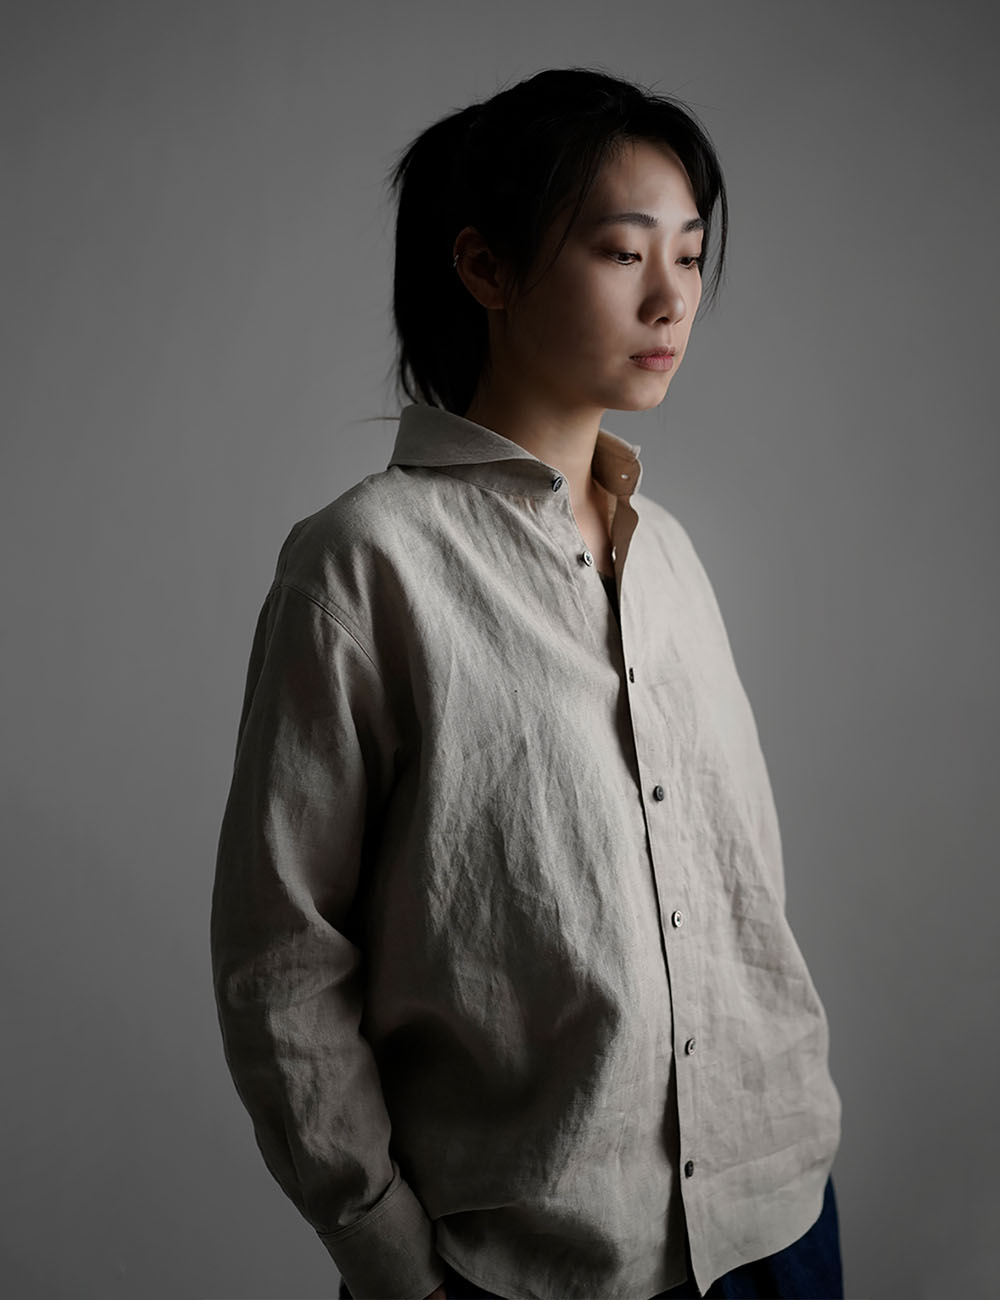 【wafu】Linen Shirt ショールカラー ブラウス　/亜麻ナチュラル t036b-amn1